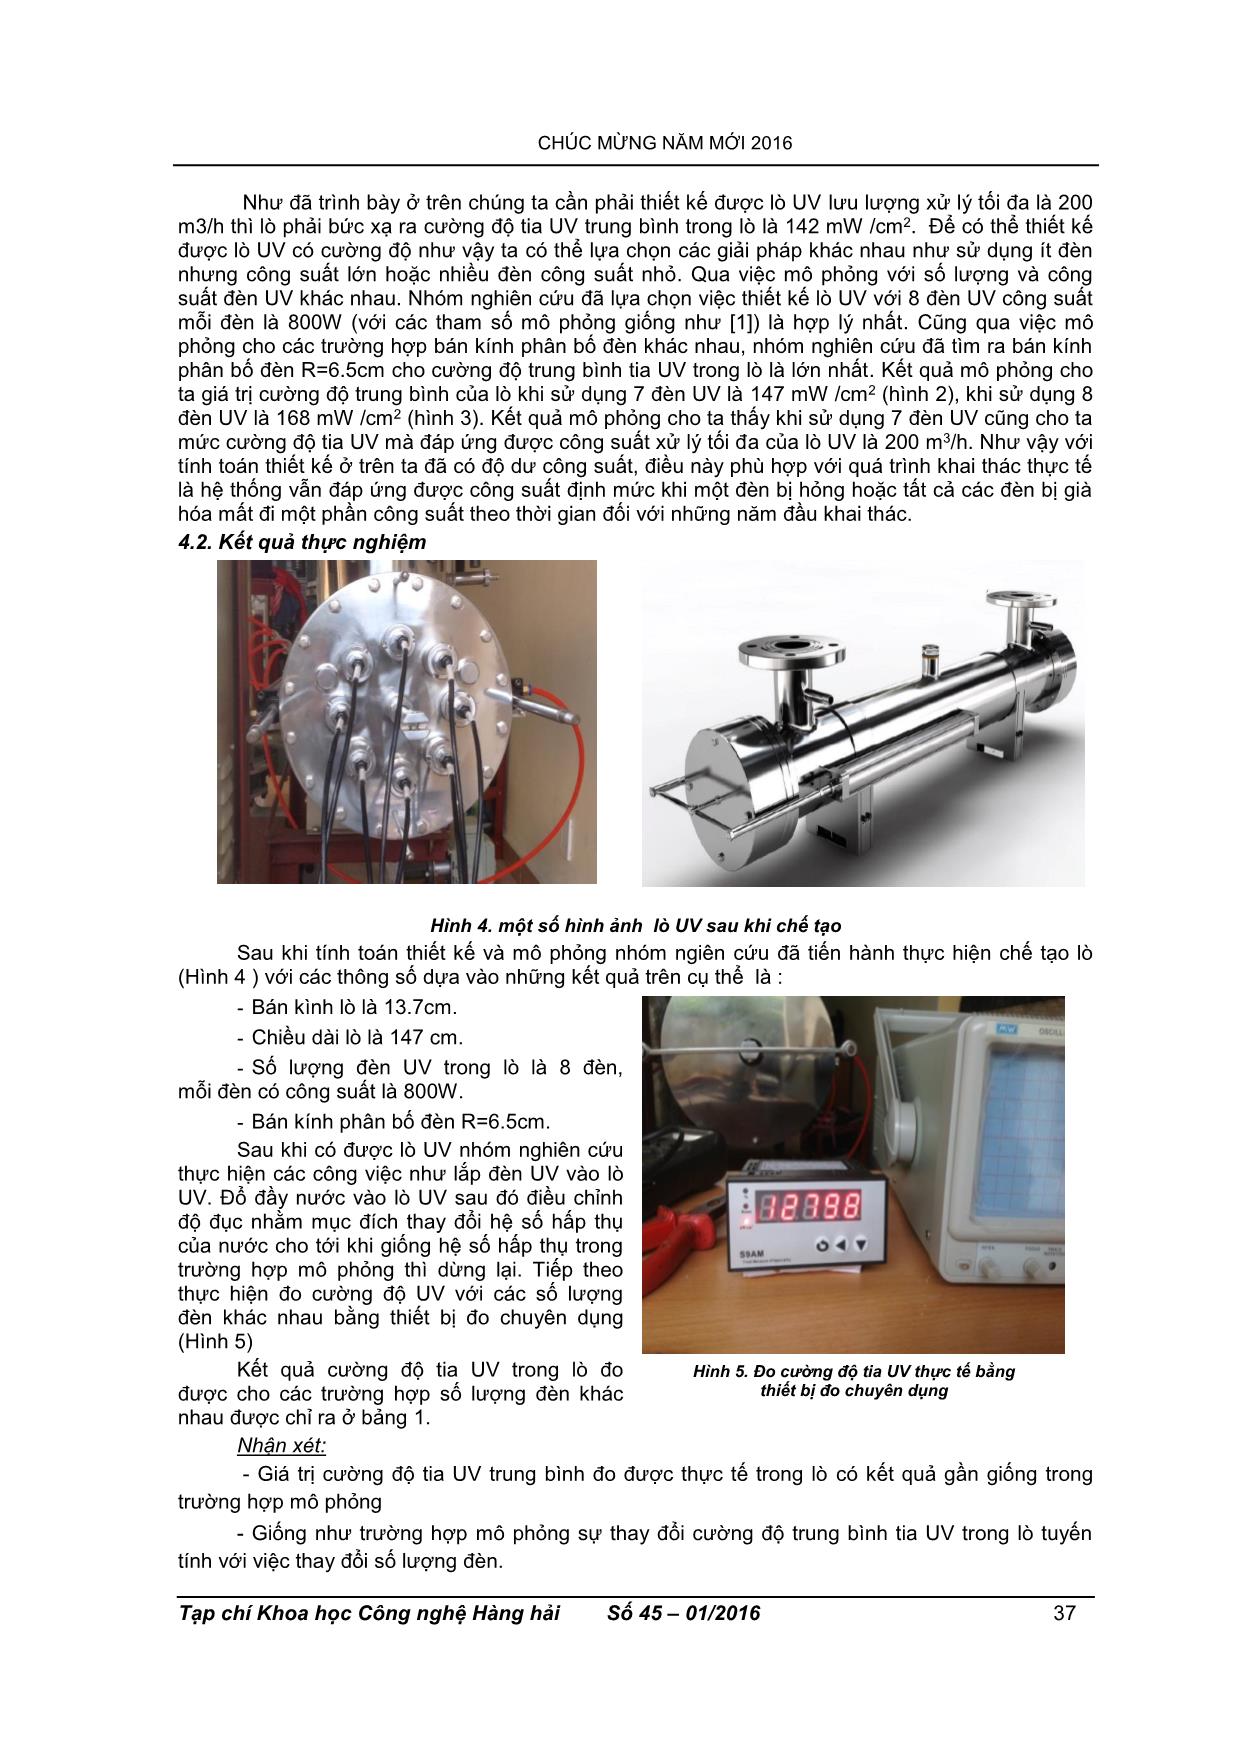 Nghiên cứu, mô phỏng và thiết kế lò uv trong hệ thống xử lý nước Ballast trang 4